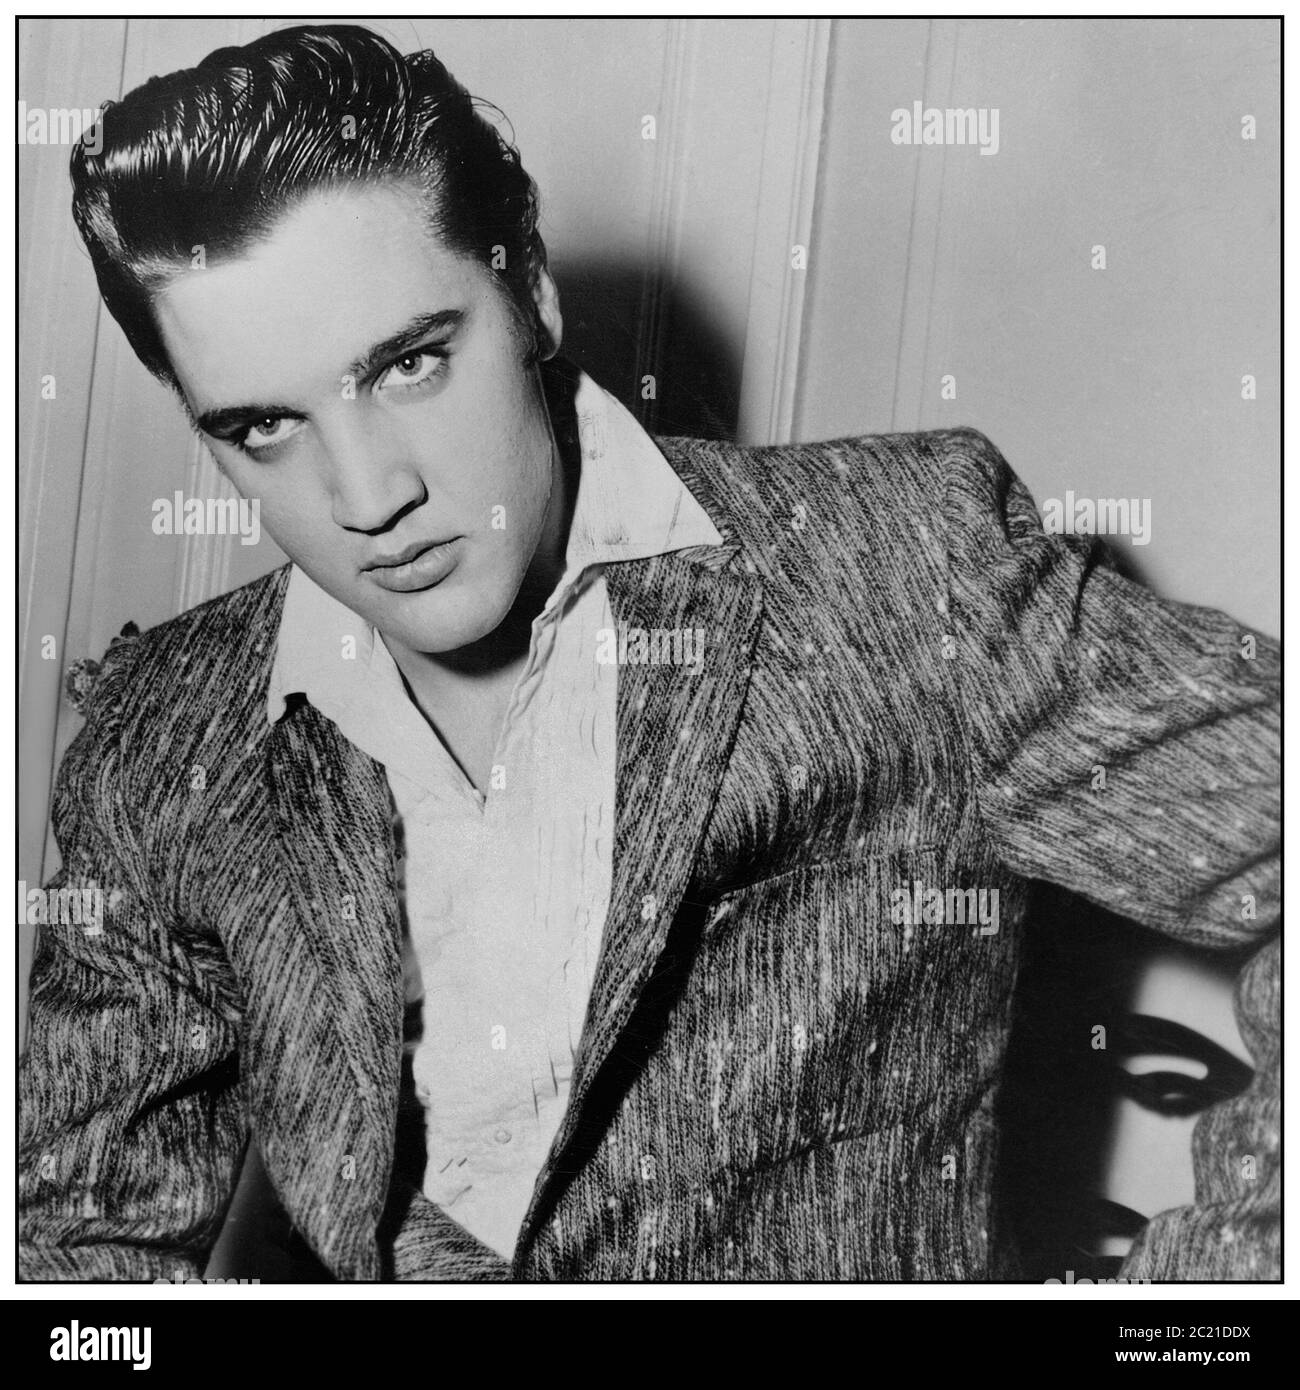 ARCHIVIO ELVIS PRESLEY ritratto promozionale. Successivamente utilizzato per la copertina anteriore 1960 - 1961 'le sessioni della California'. Tracce registrate tra novembre 1960 e gennaio 1961 presso il radio Recorders Studio di Los Angeles, California Foto Stock